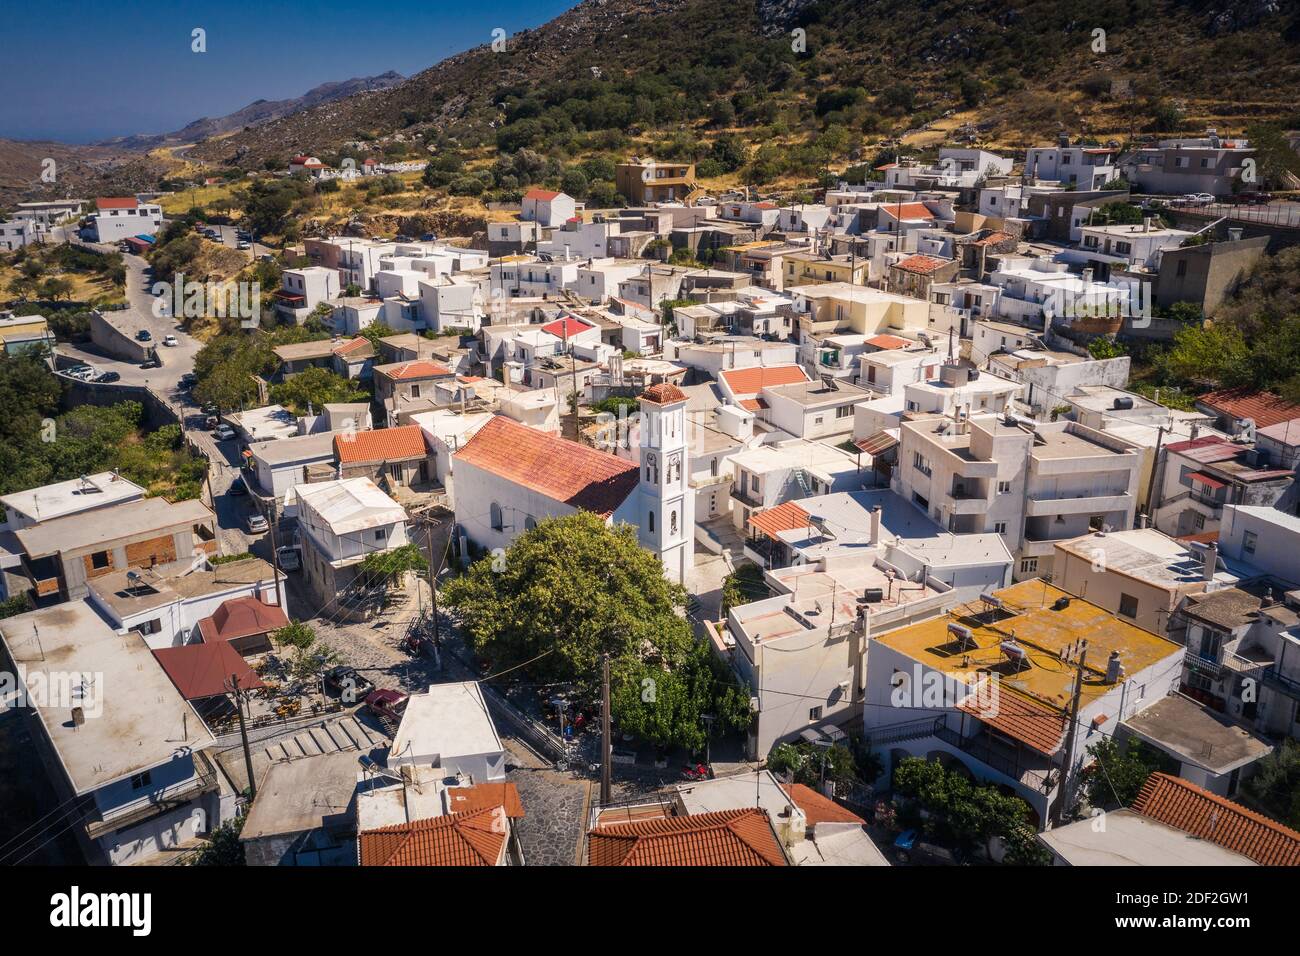 Traditional Cretan village of Akoumia, Greece Stock Photo